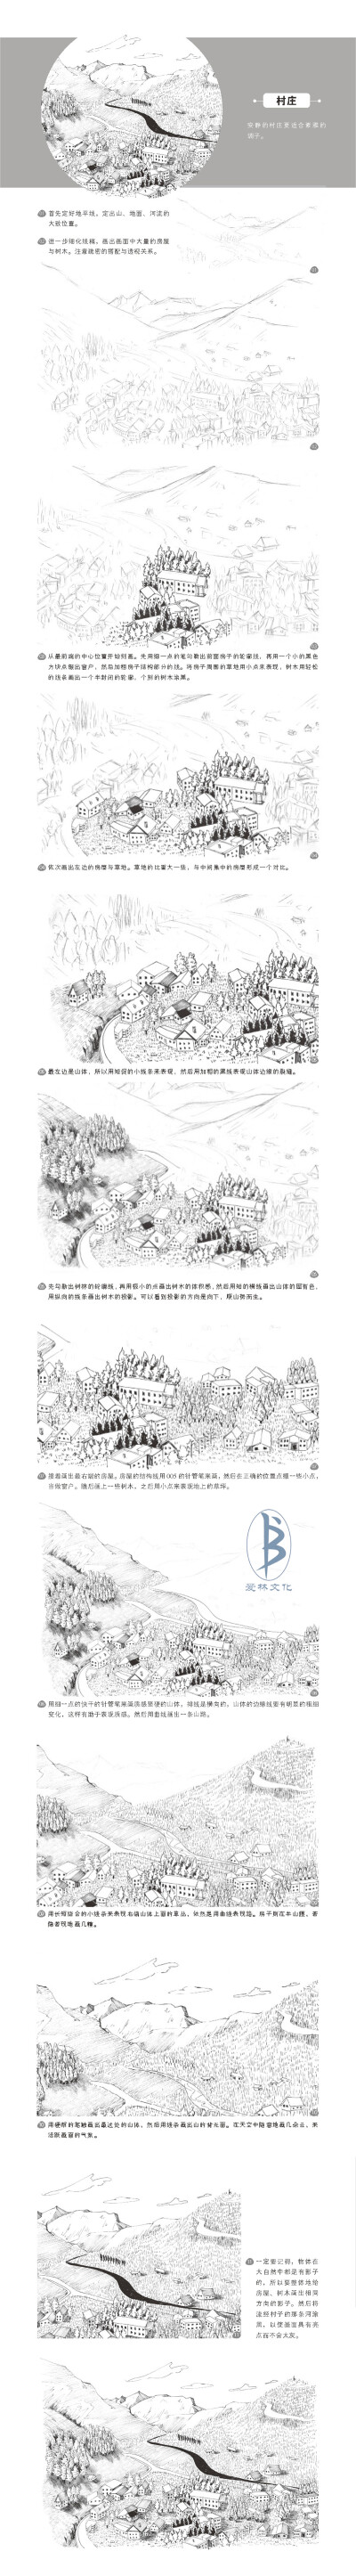 本案例摘自人民邮电出版社出版的《黑白绘：钢笔画完全自学教程》--爱林文化制作
